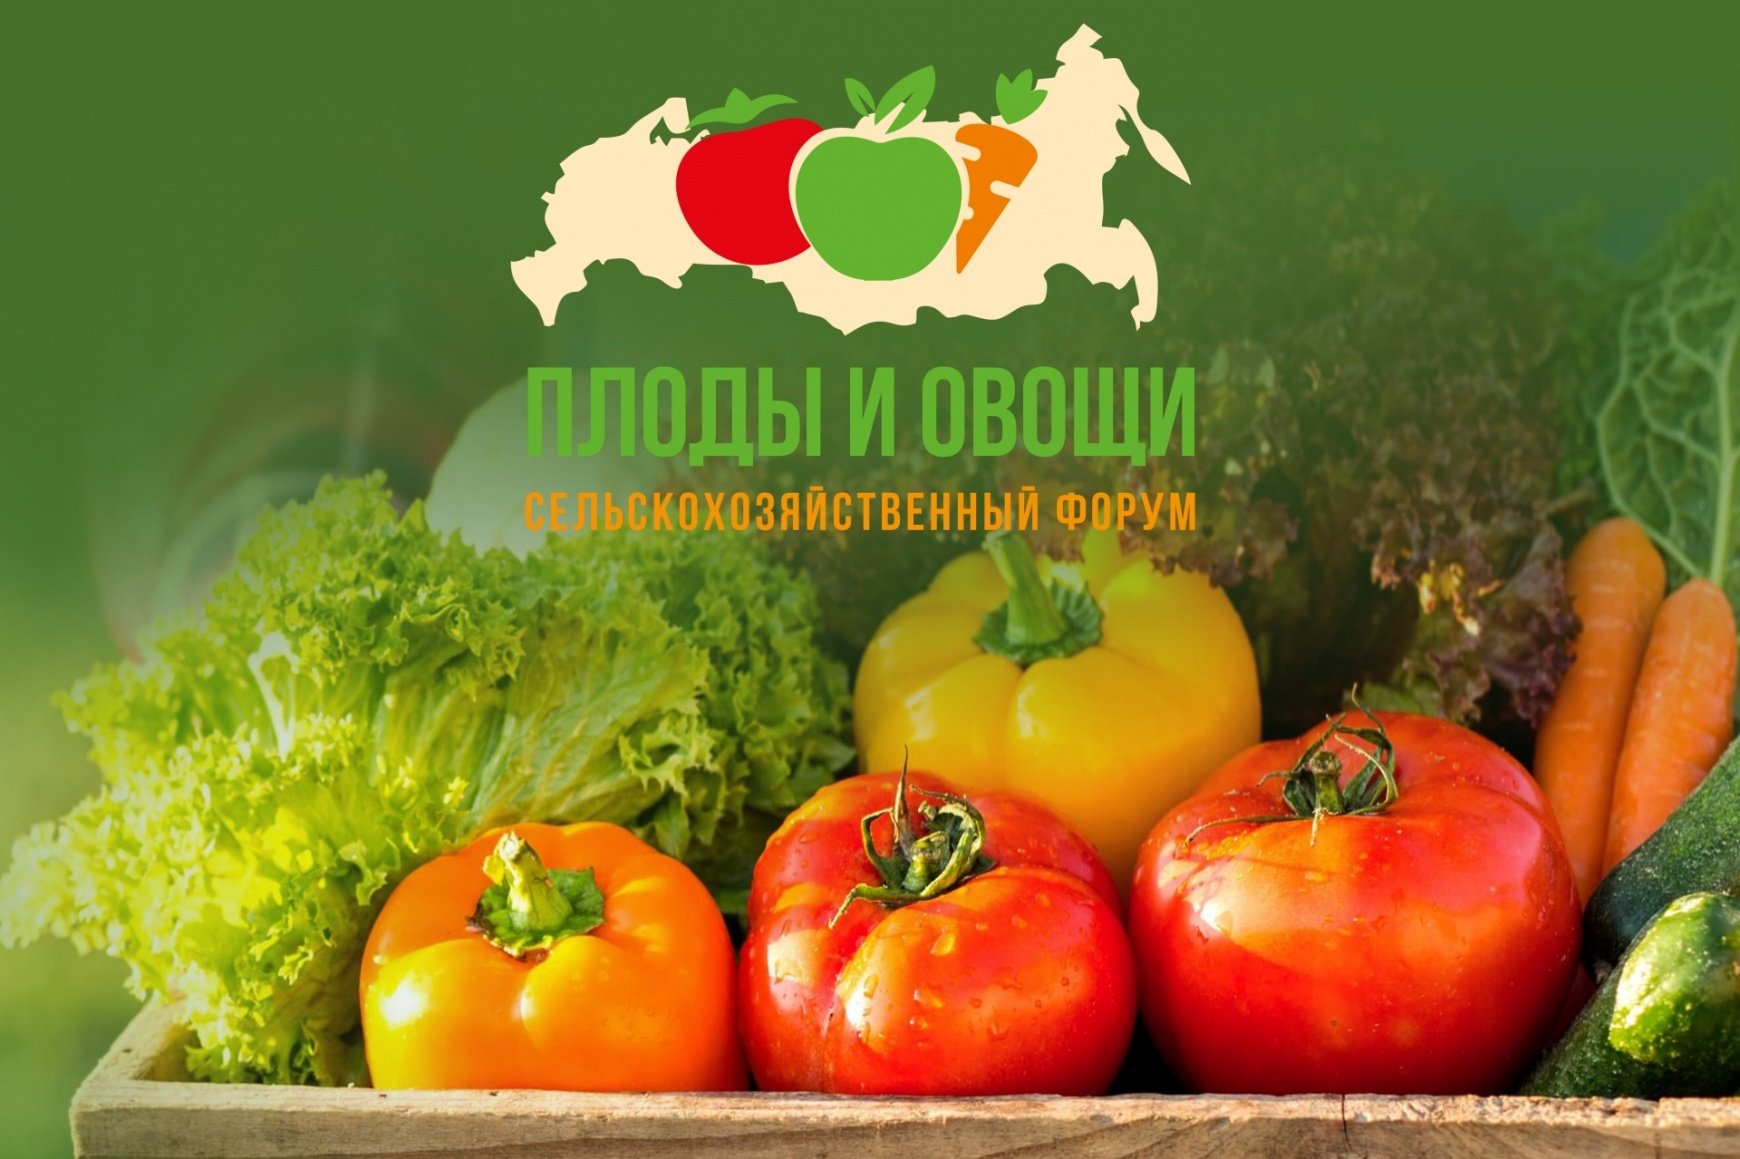 На форуме «Плоды и овощи» будет подробно представлен и разобран способ уничтожения вредителей